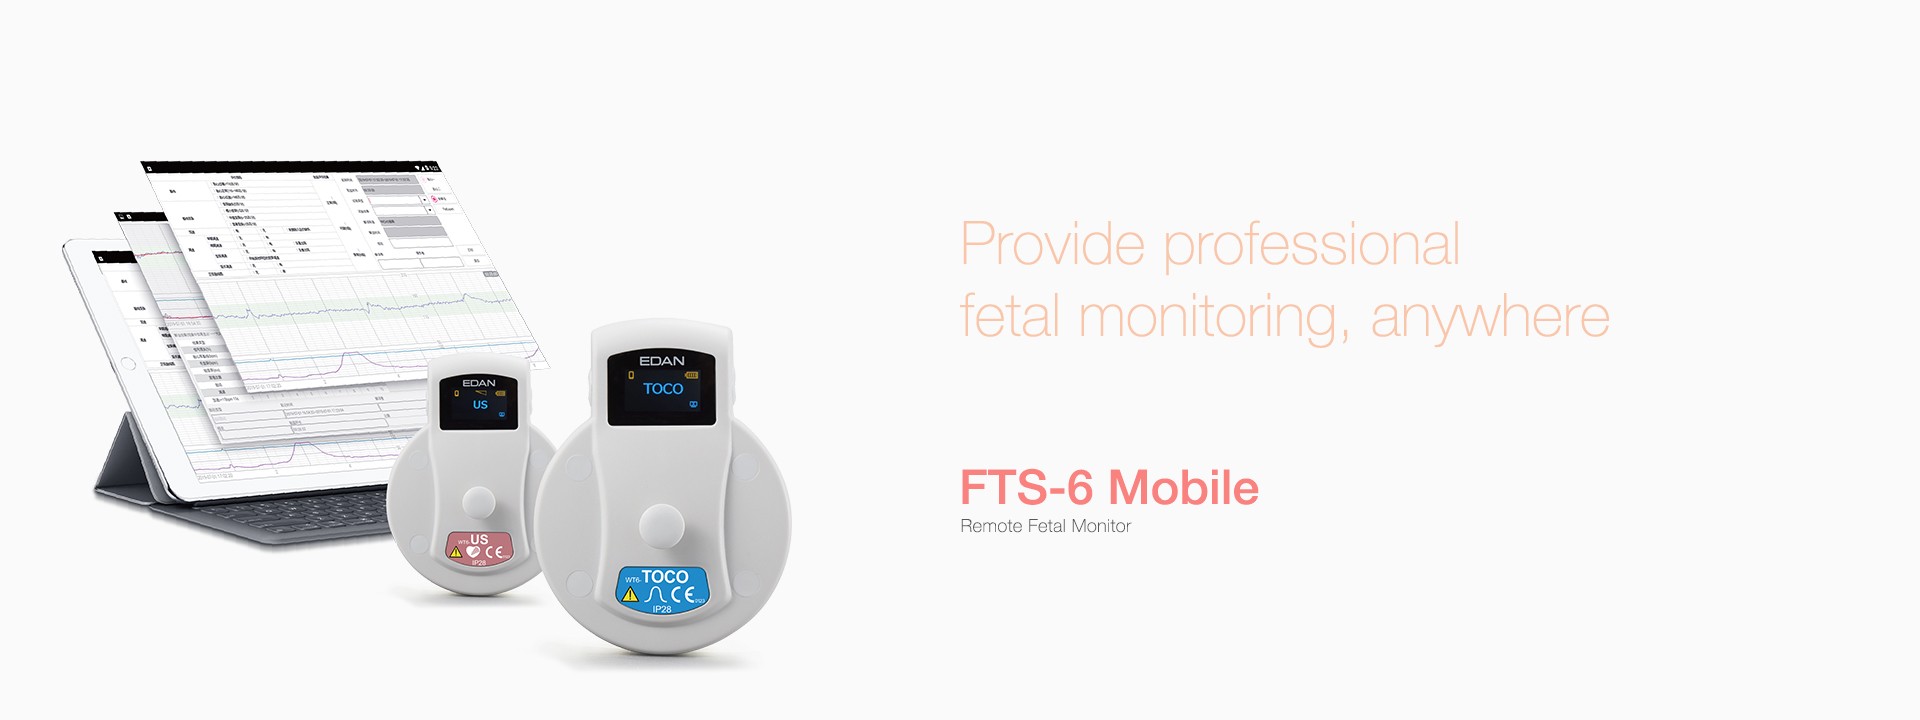 เครื่องตรวจสมรรถภาพทารกในครรภ์แบบพกพา  FTS-6 Mobile Remote Fetal Monitor  EDAN